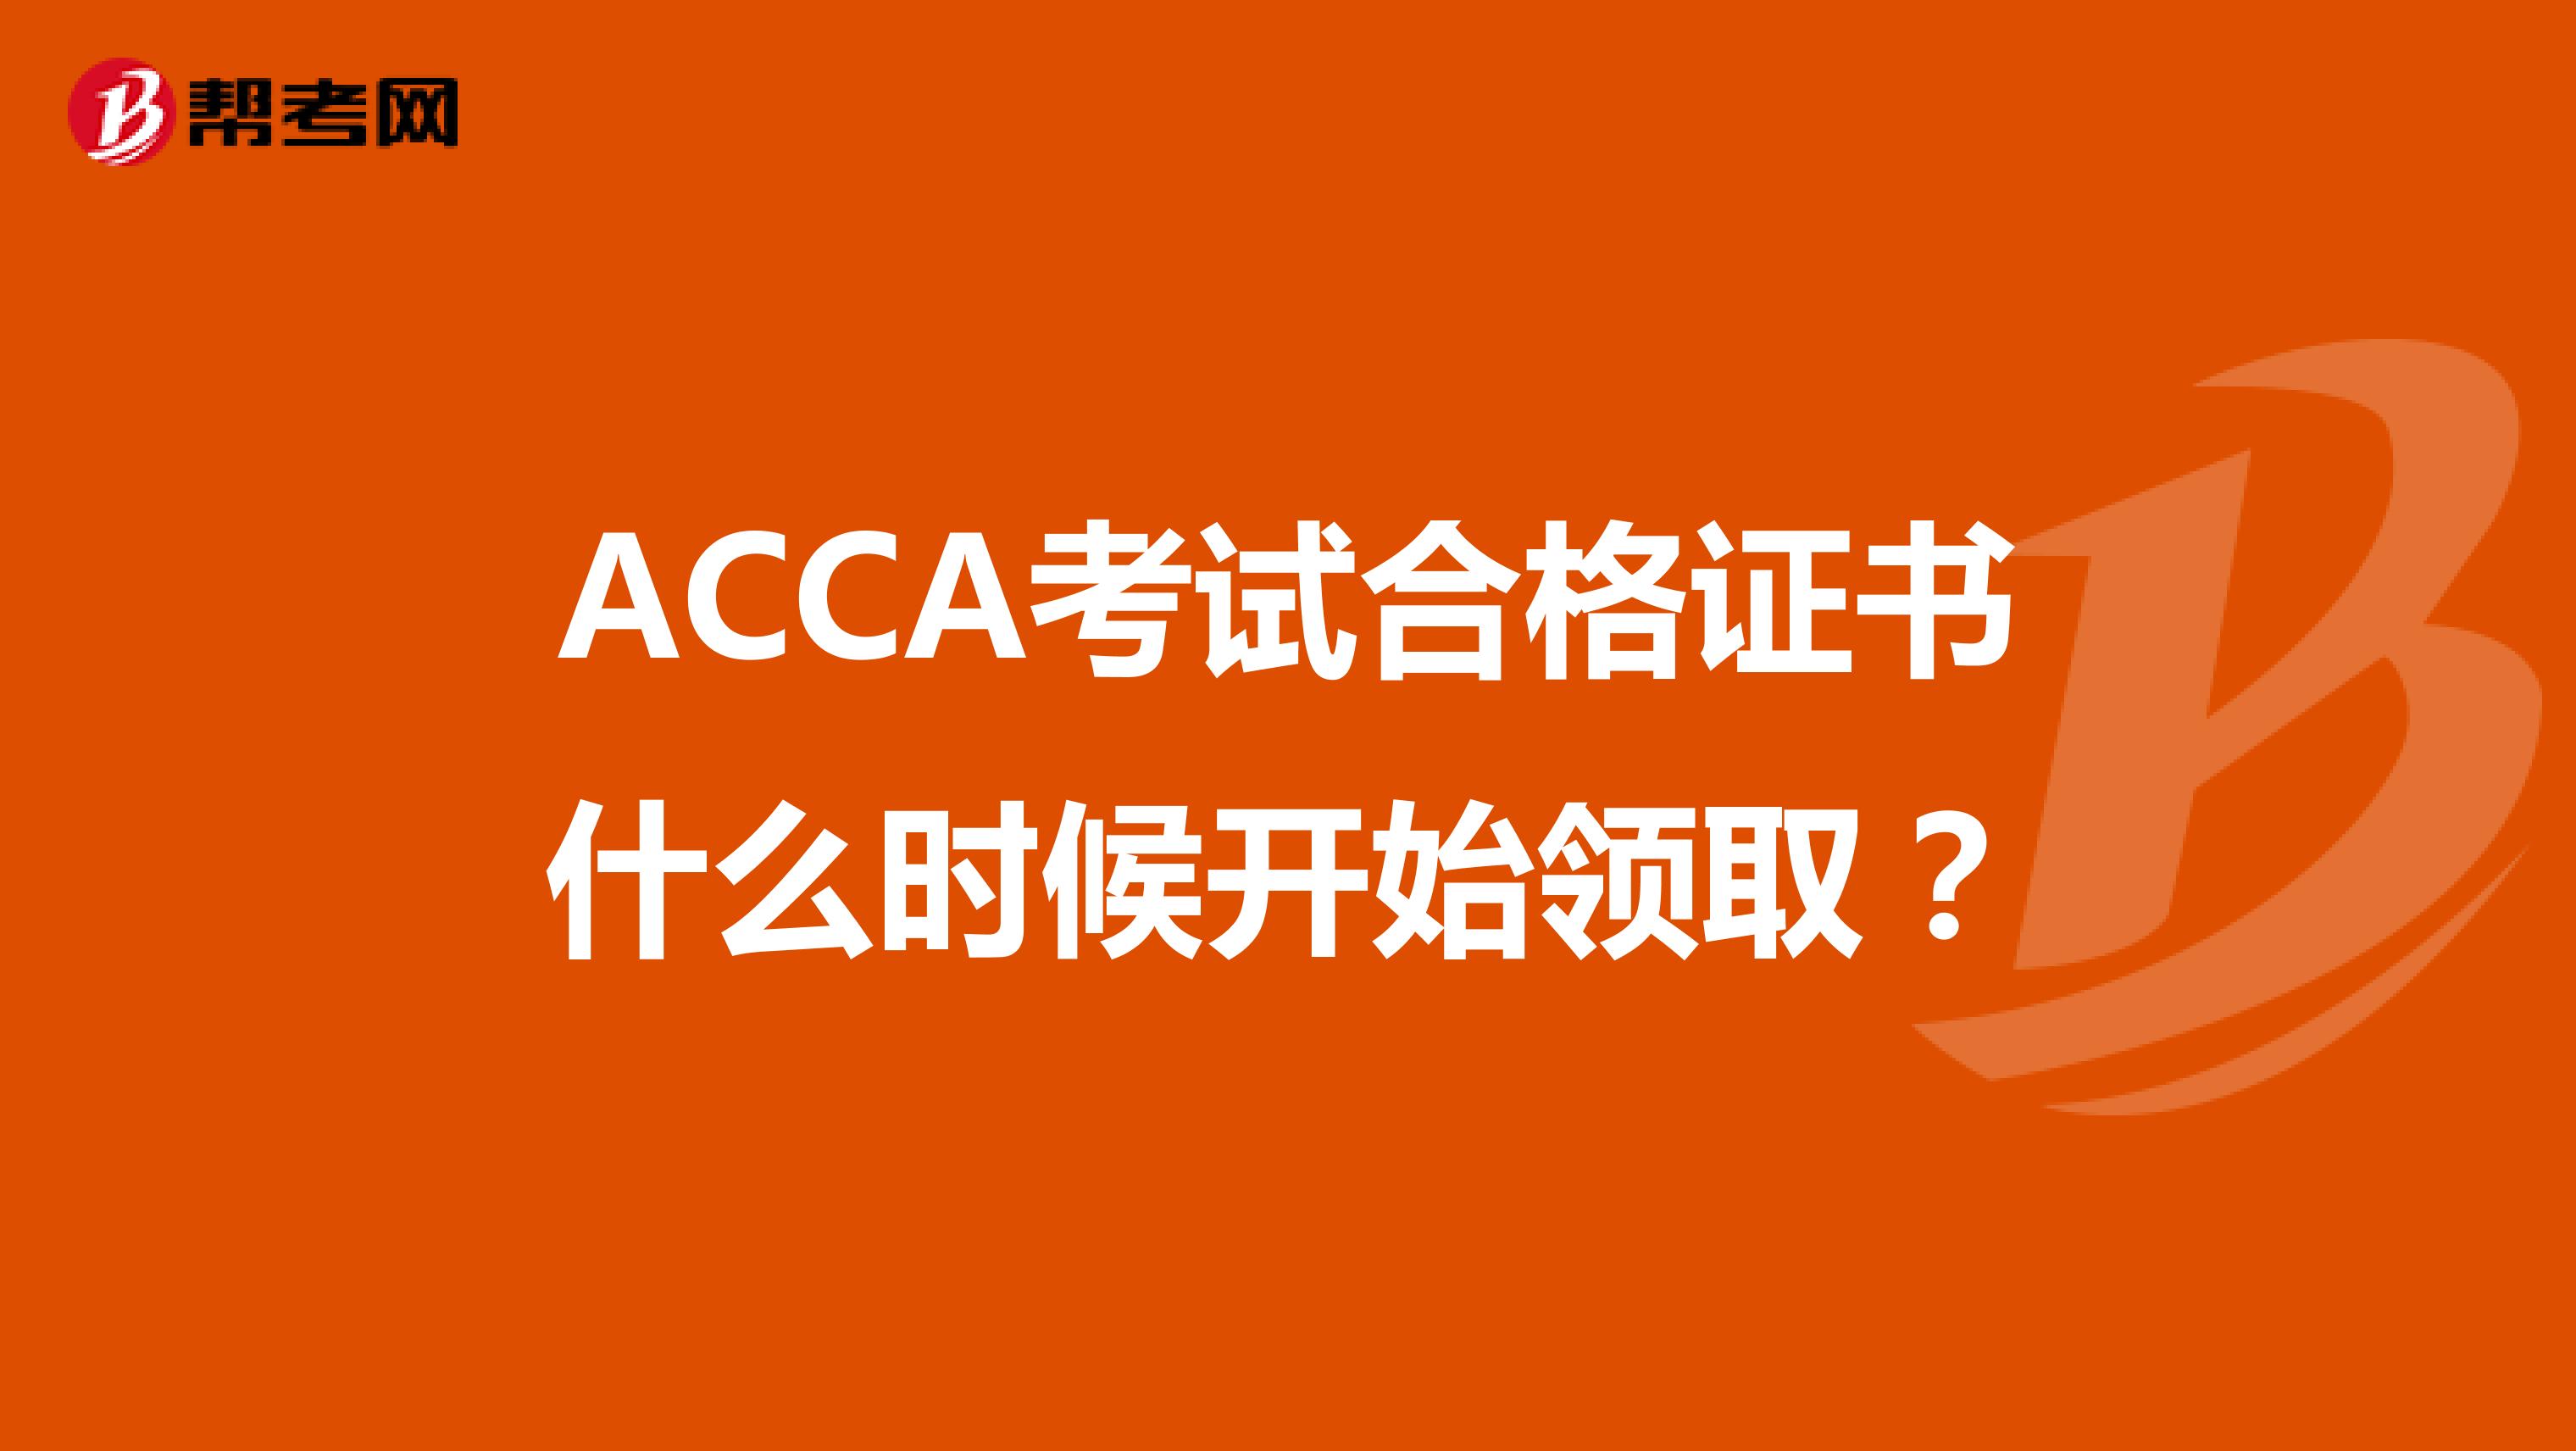 ACCA考试合格证书什么时候开始领取？